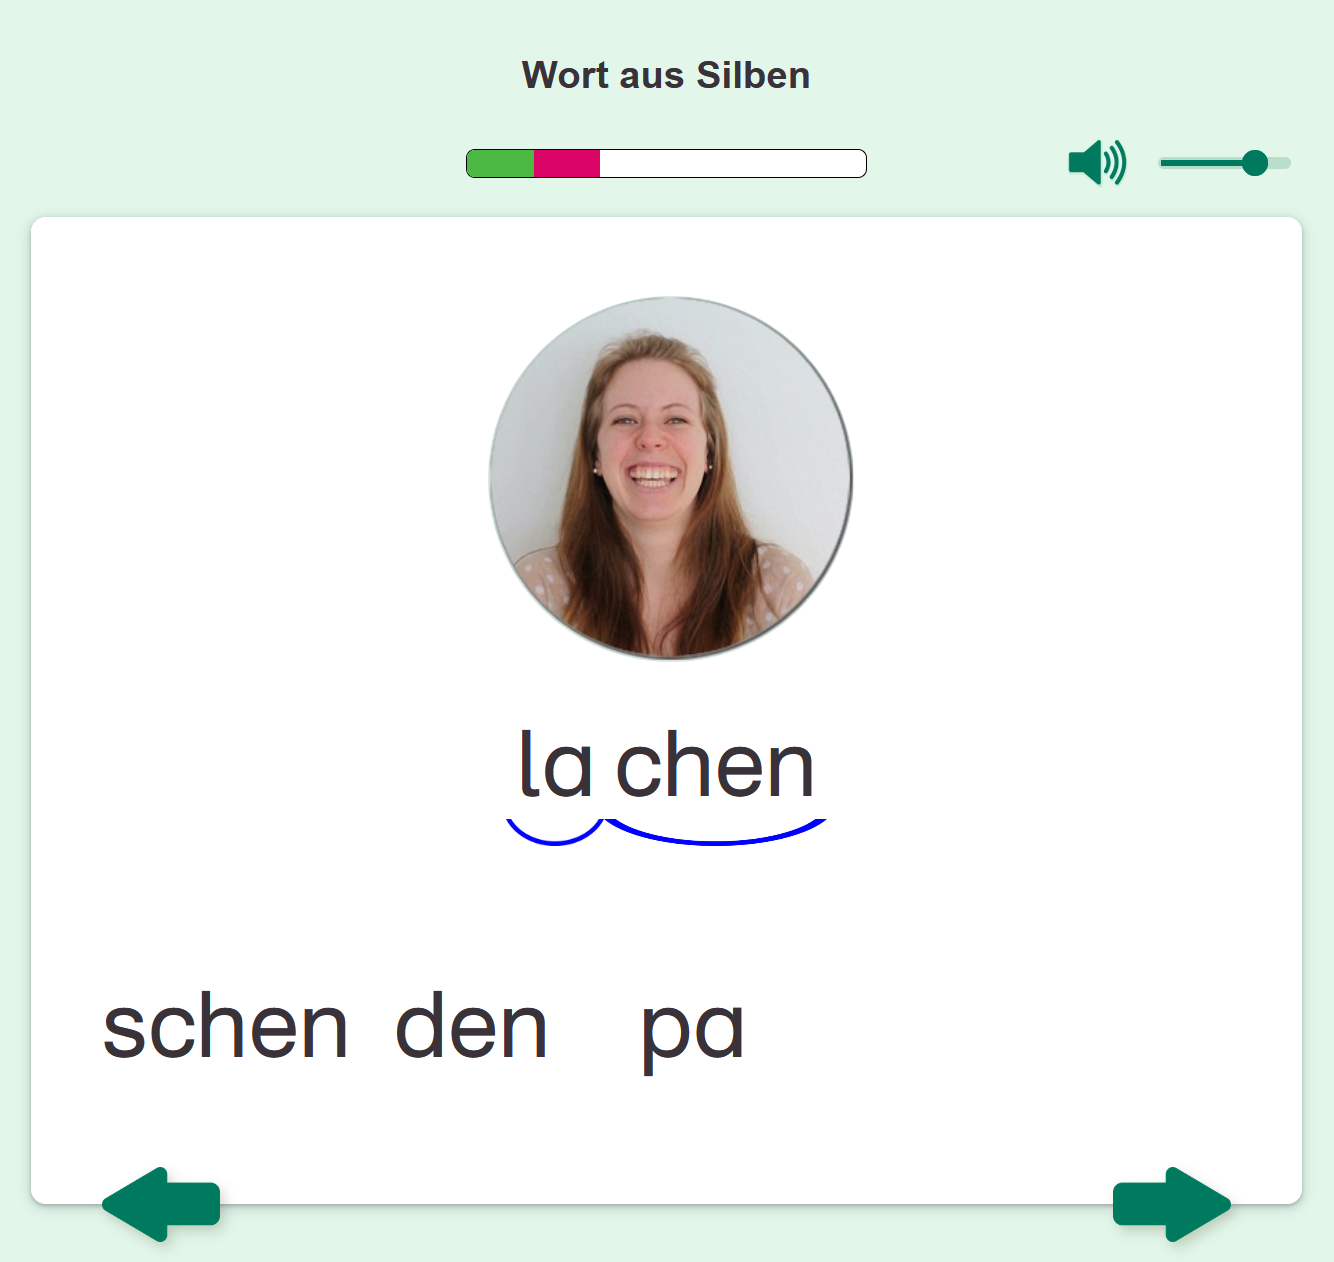 Screenshot LernMax Deutsch Alphabetisierung Online